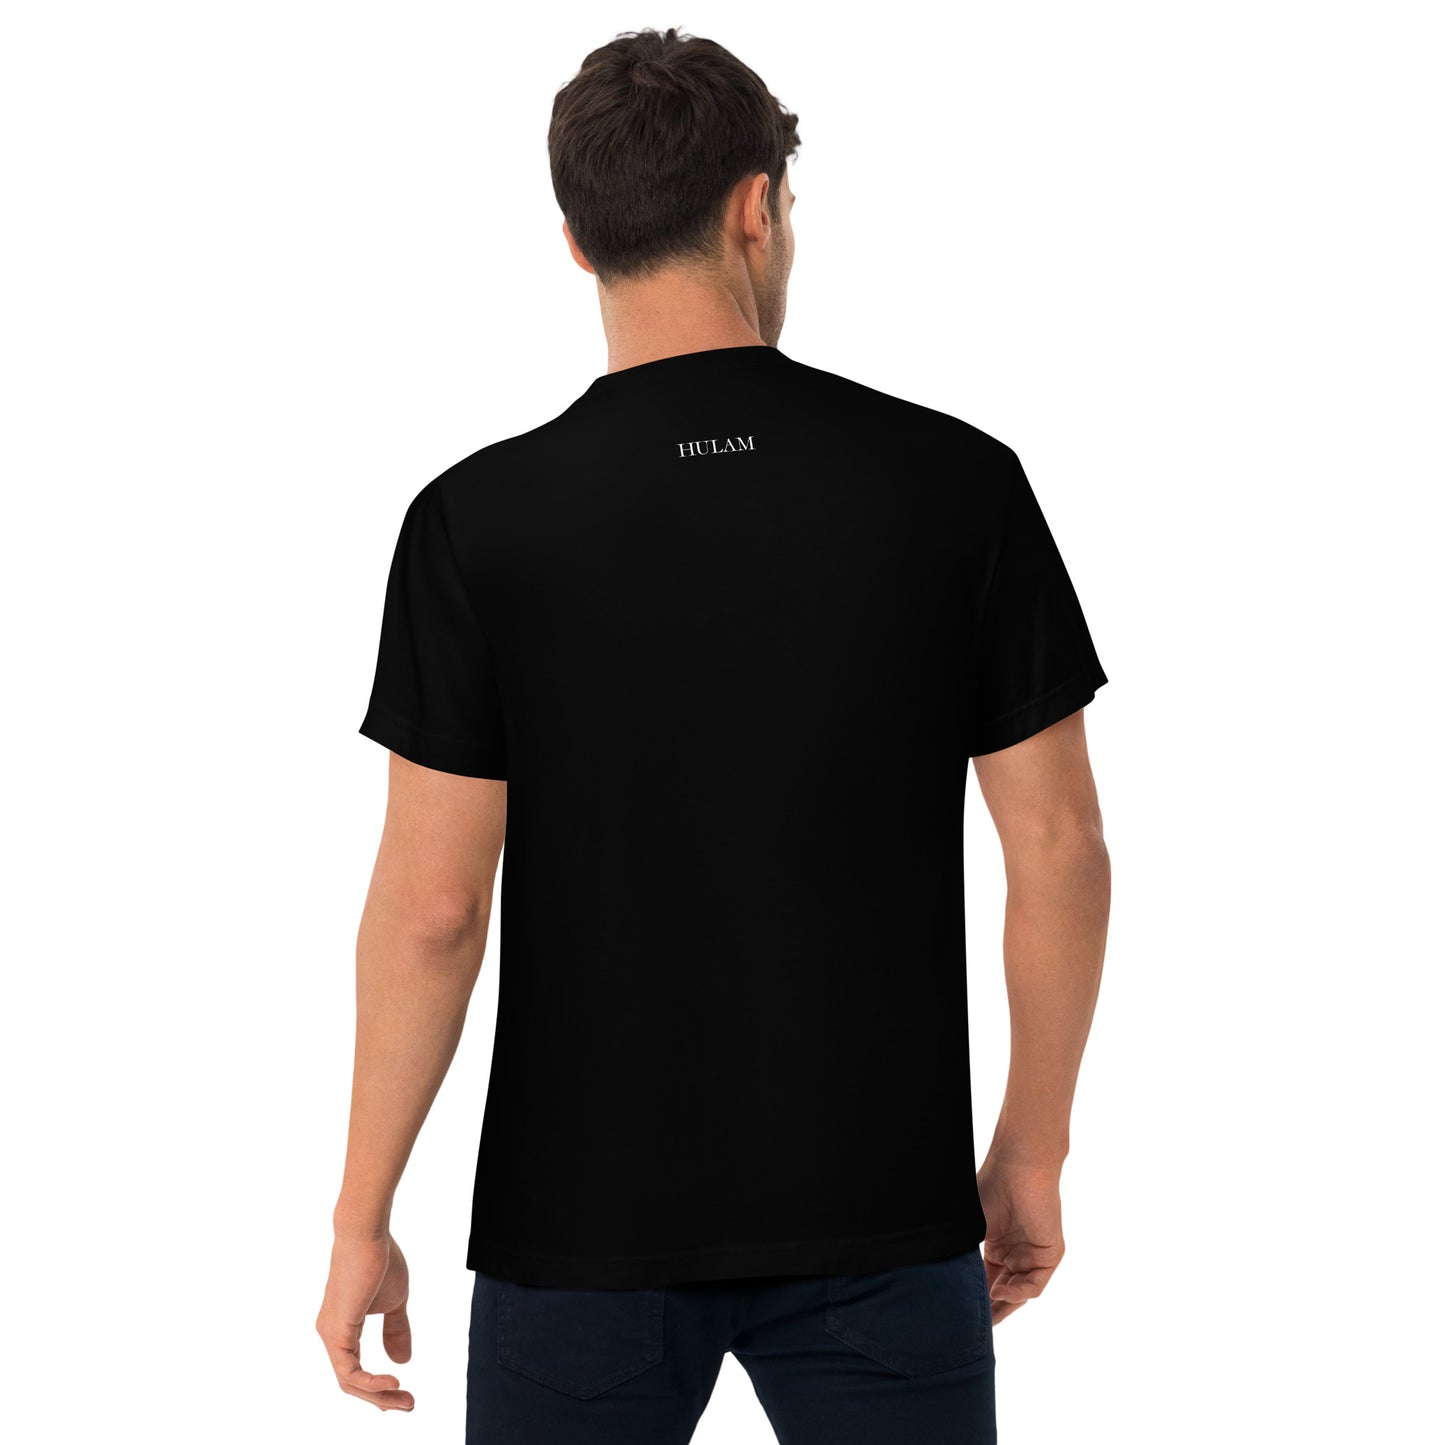 Baju t-shirt hitam HULAM berkualiti dewasa